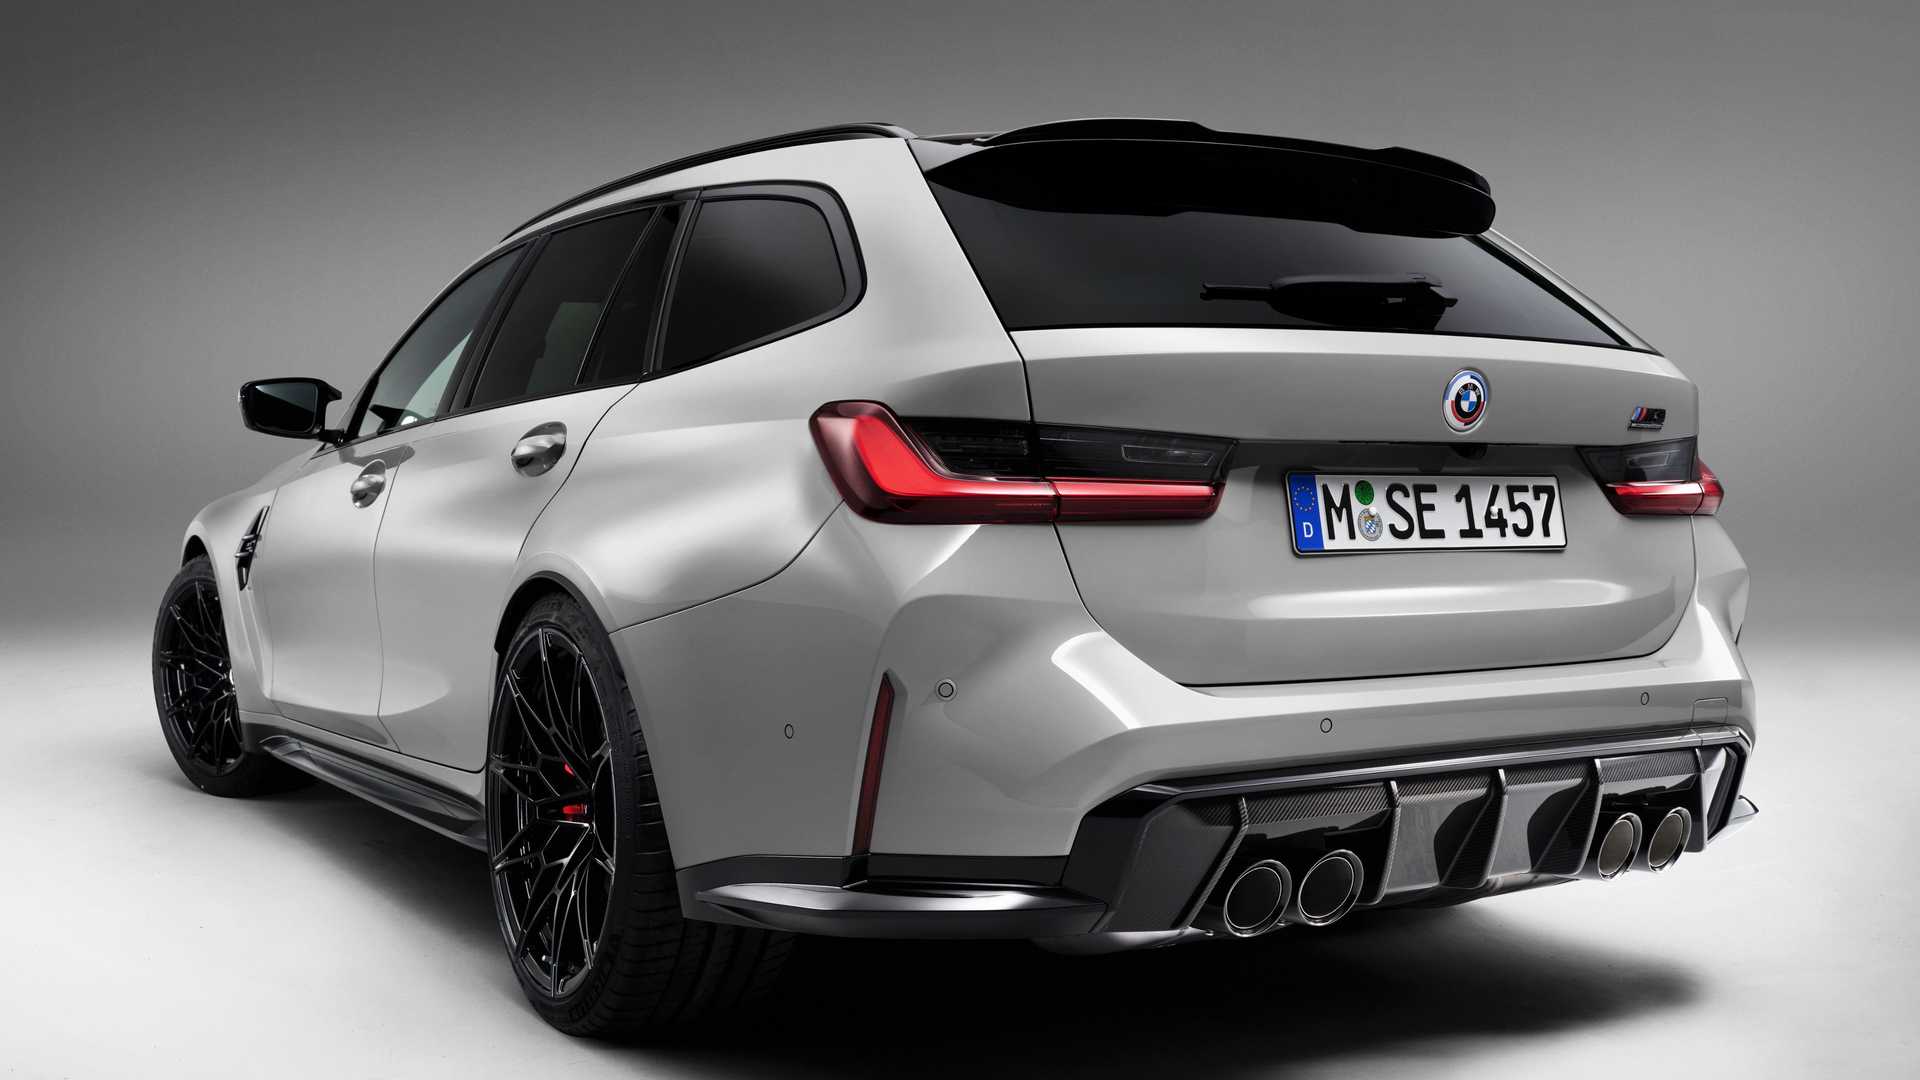 Debiutuje BMW M3 Touring - to najszybsze kombi